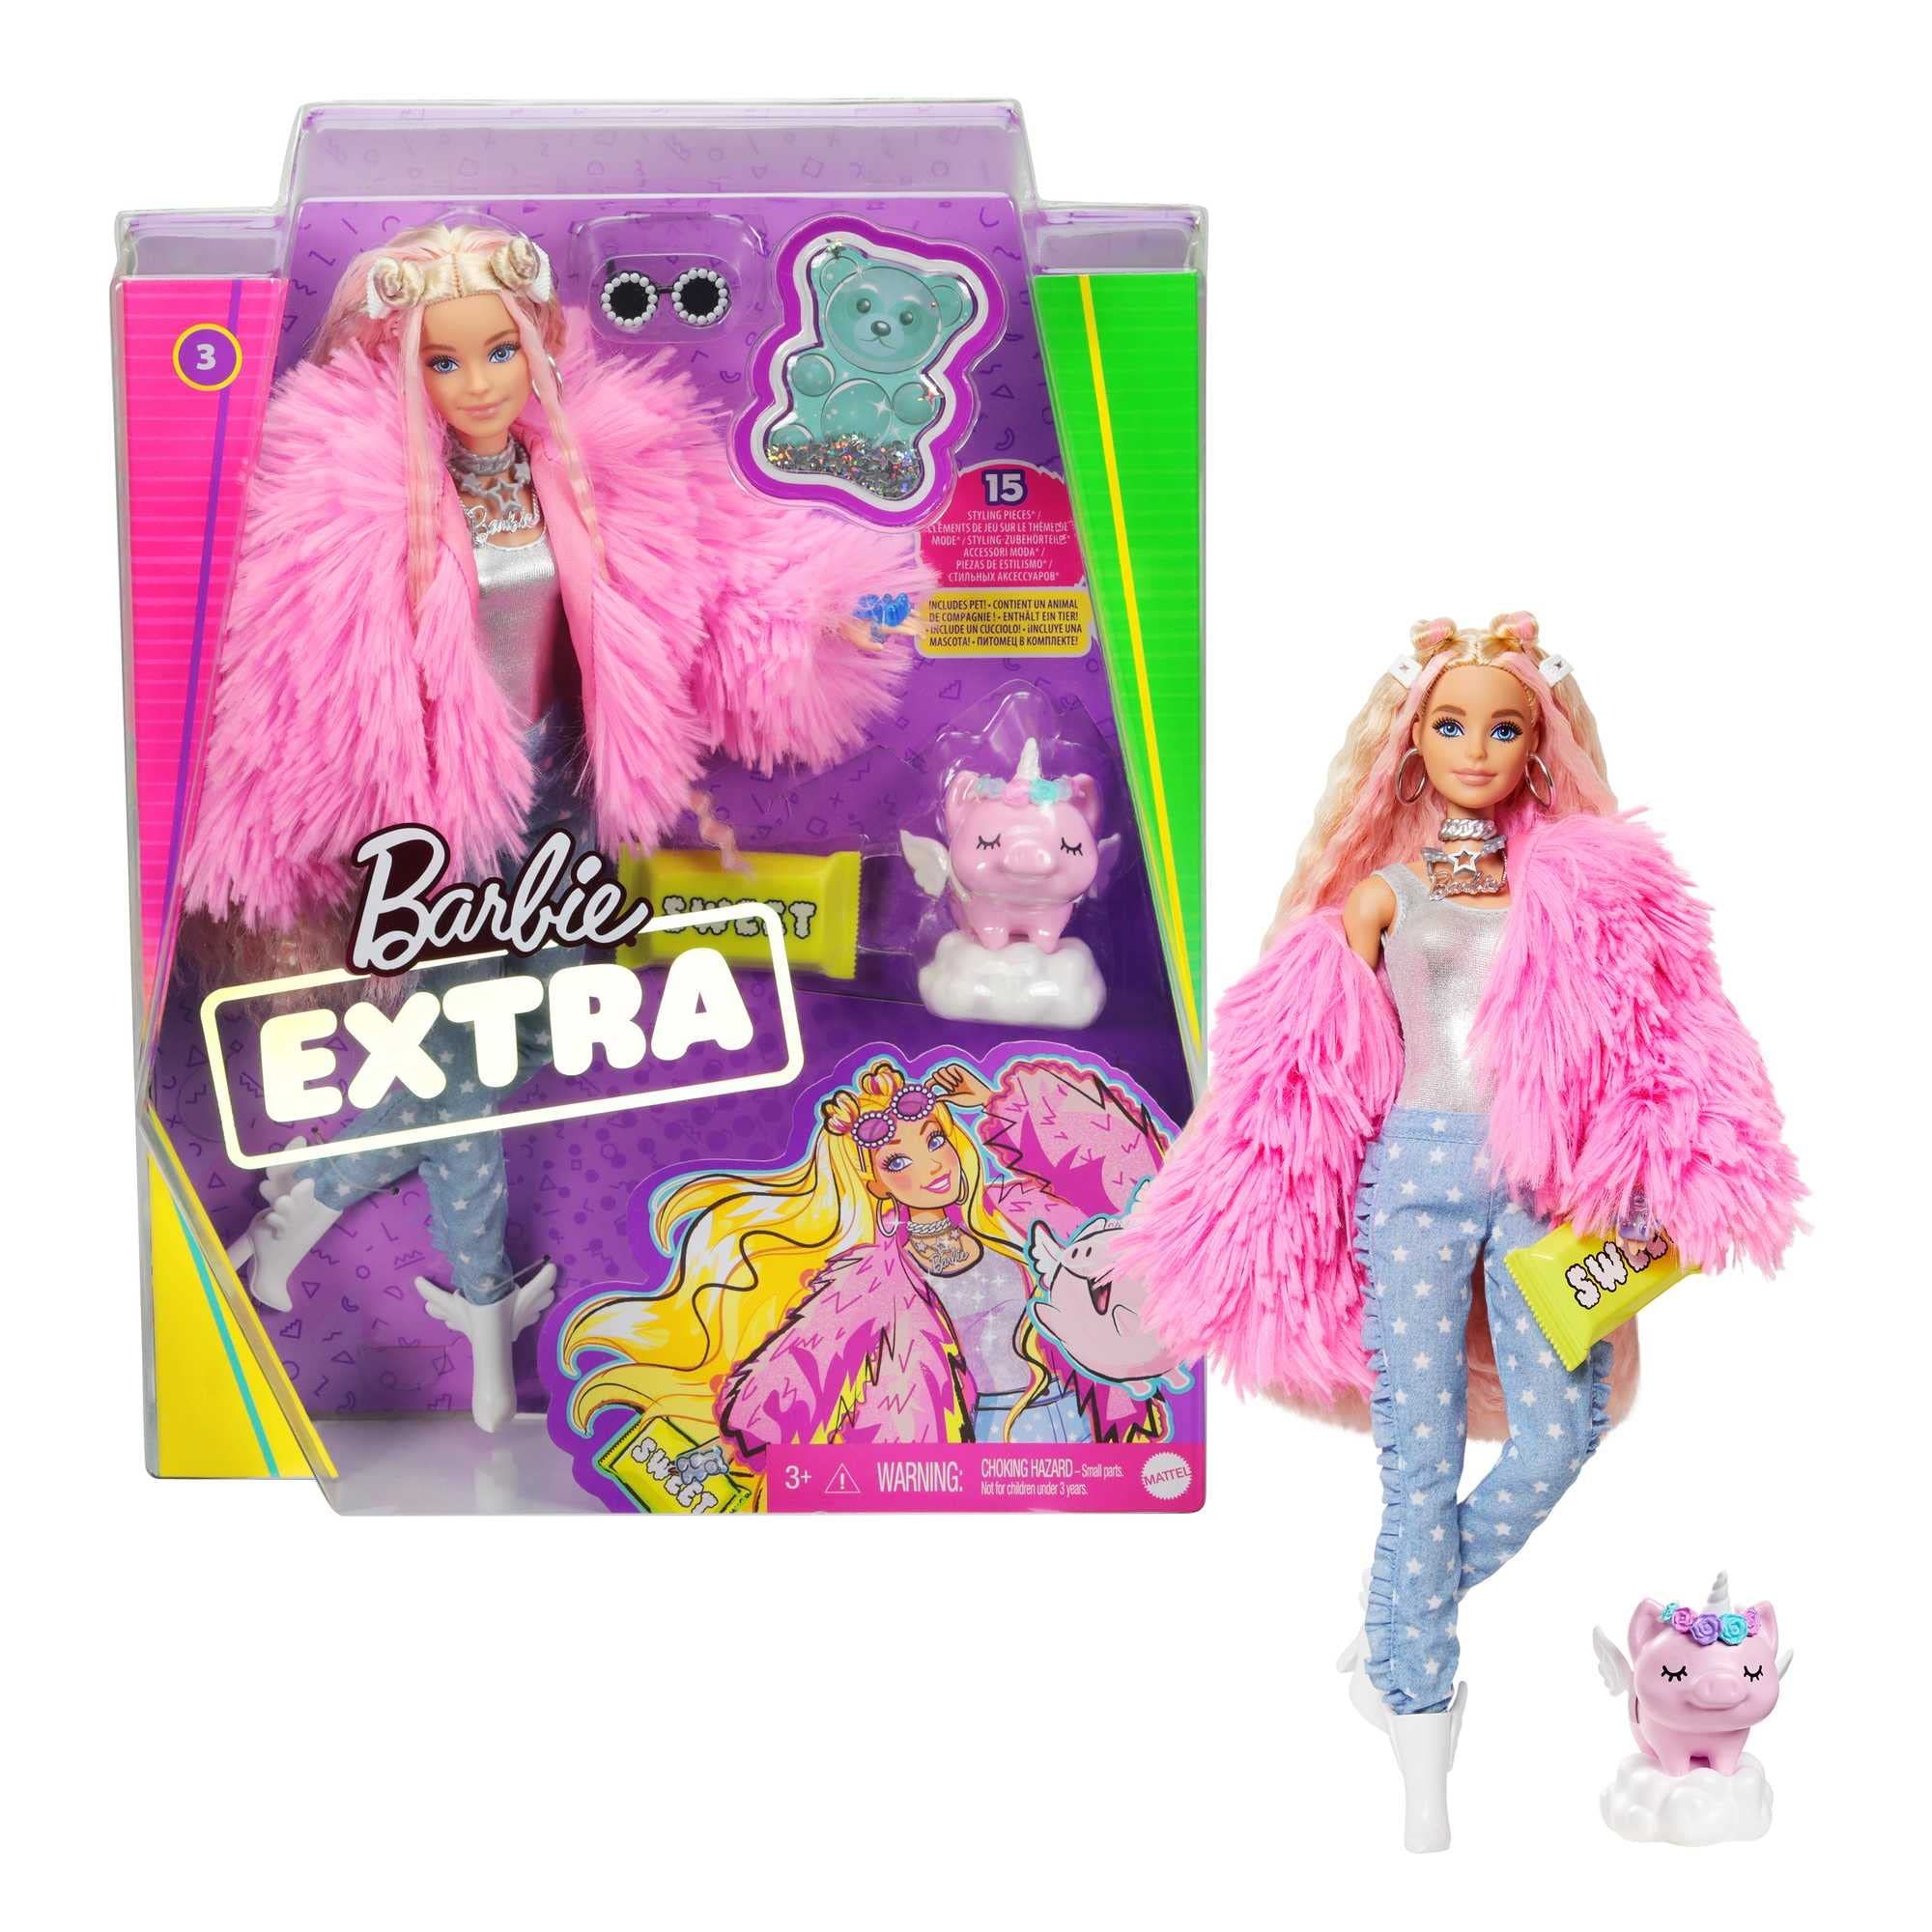 Кукла новое слово. Кукла Barbie Экстра в розовой куртке grn28. Кукла Барби Экстра grn27. Кукла Barbie Барби grn28 Экстра в розовой куртке Mattel. Барби Экстра 2020.